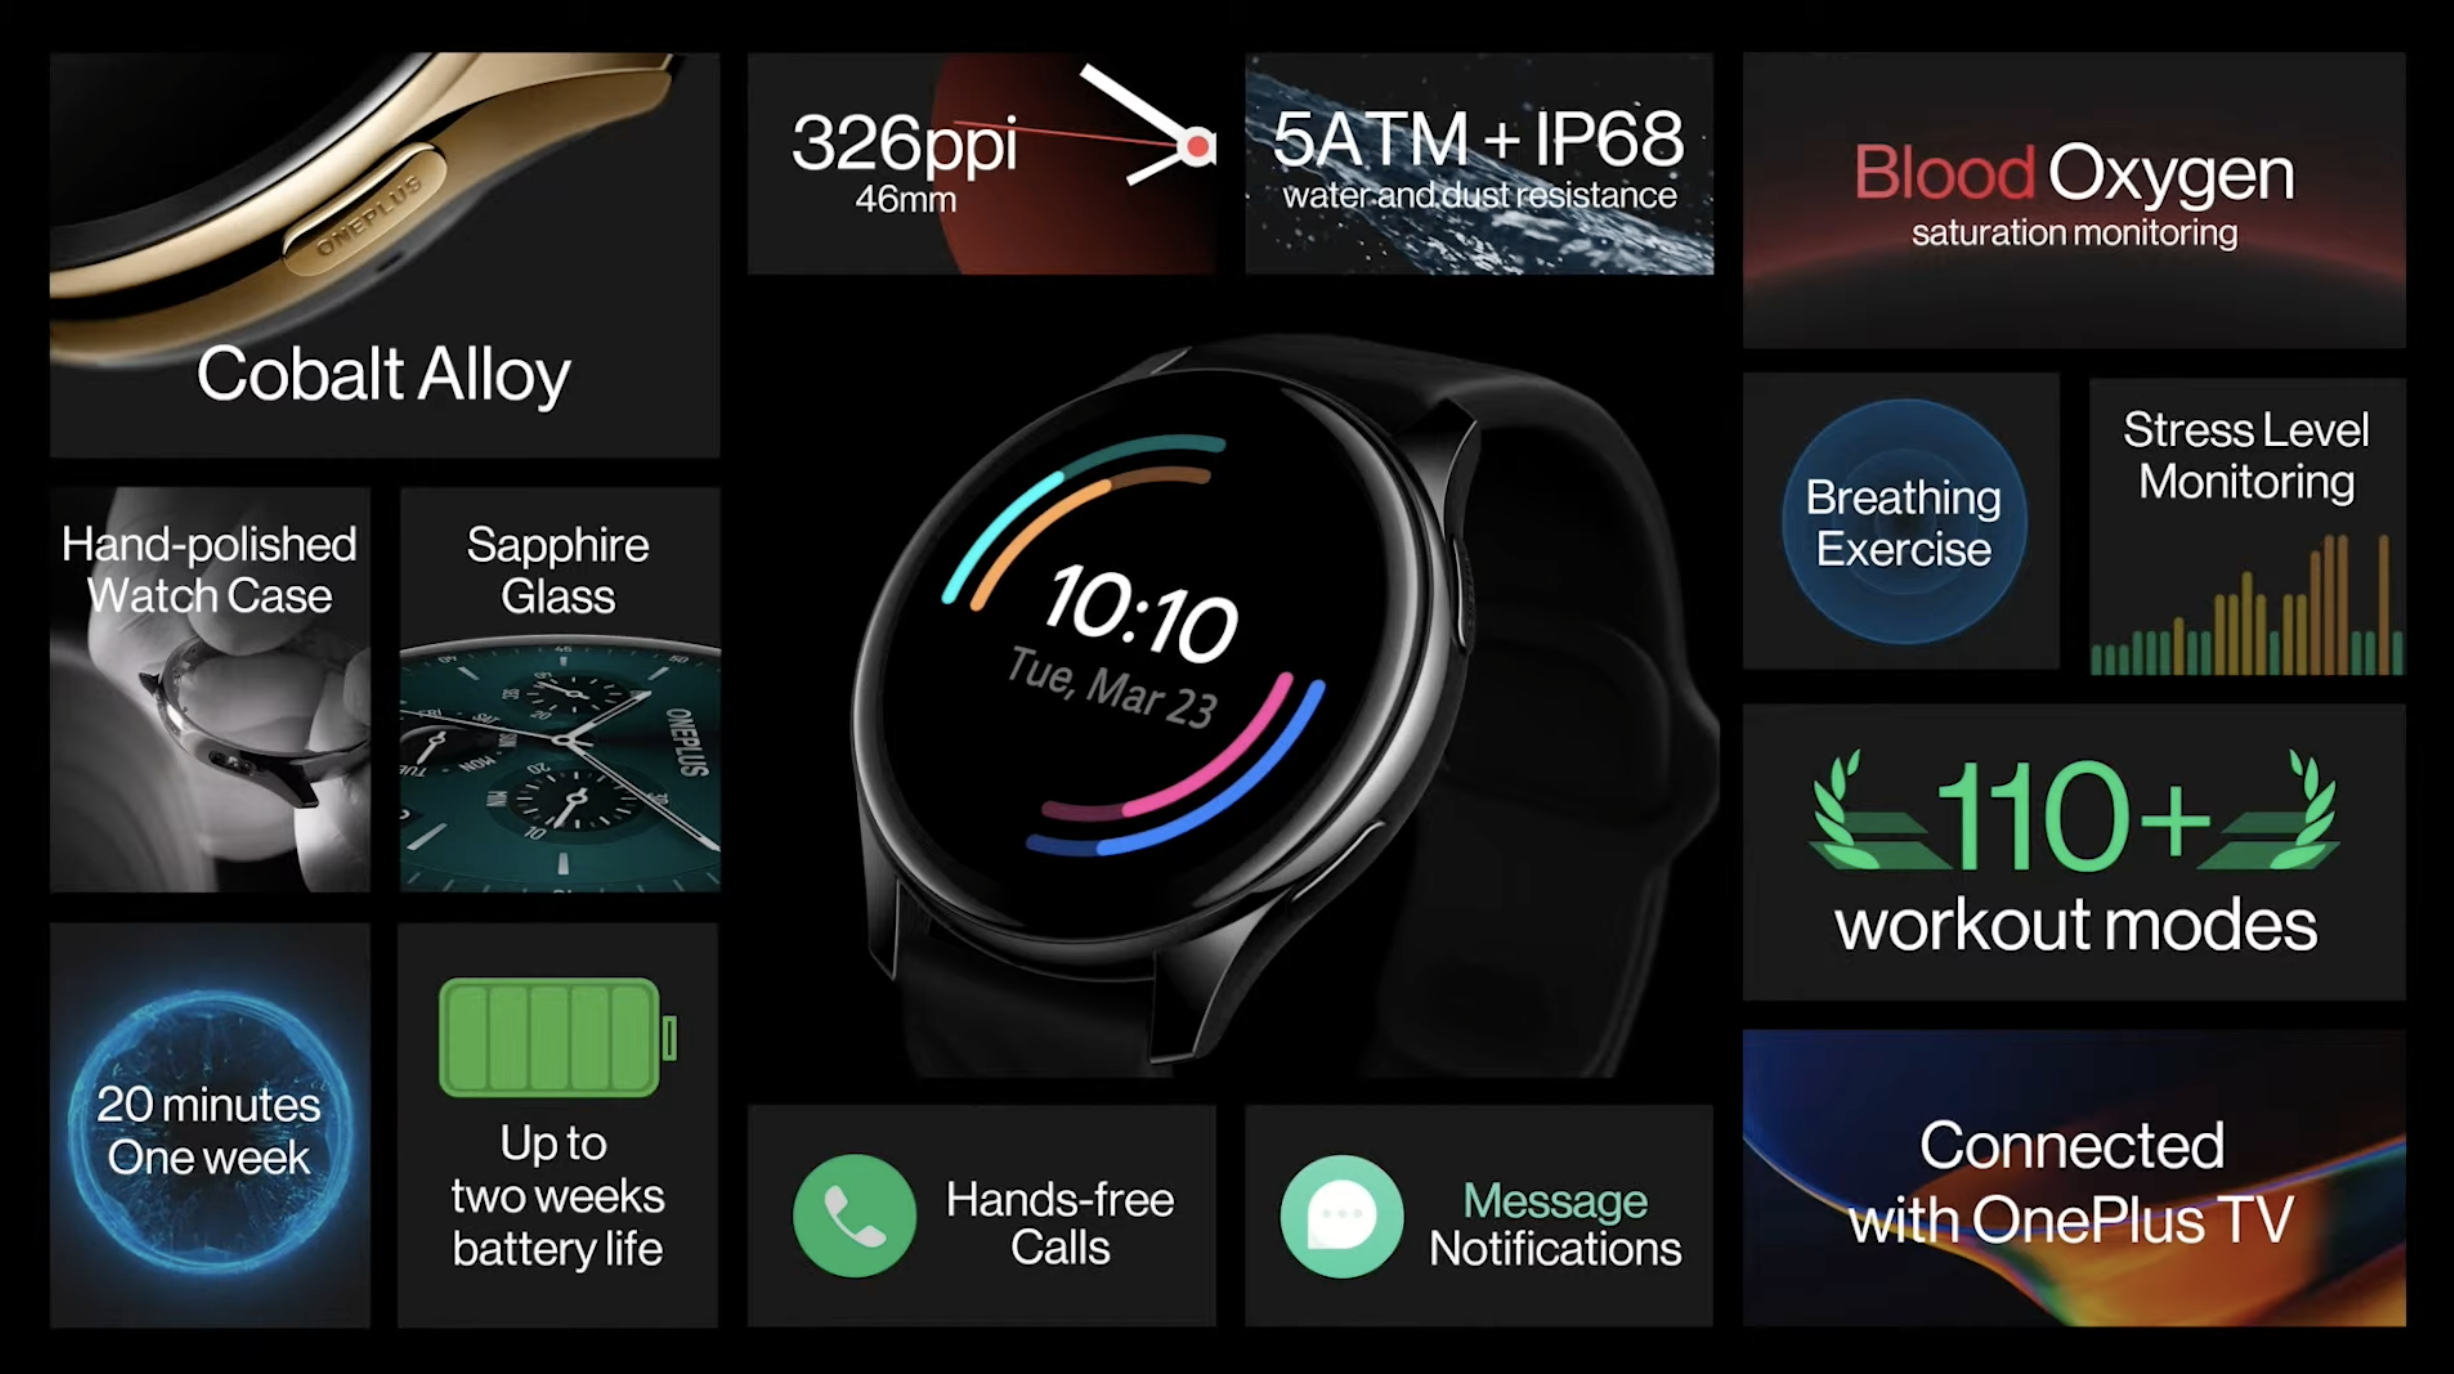 OnePlus Watch ra mắt: Thiết kế giống OPPO Watch RX, màn hình OLED, IP68, pin 2 tuần, giá 159 USD - Ảnh 3.